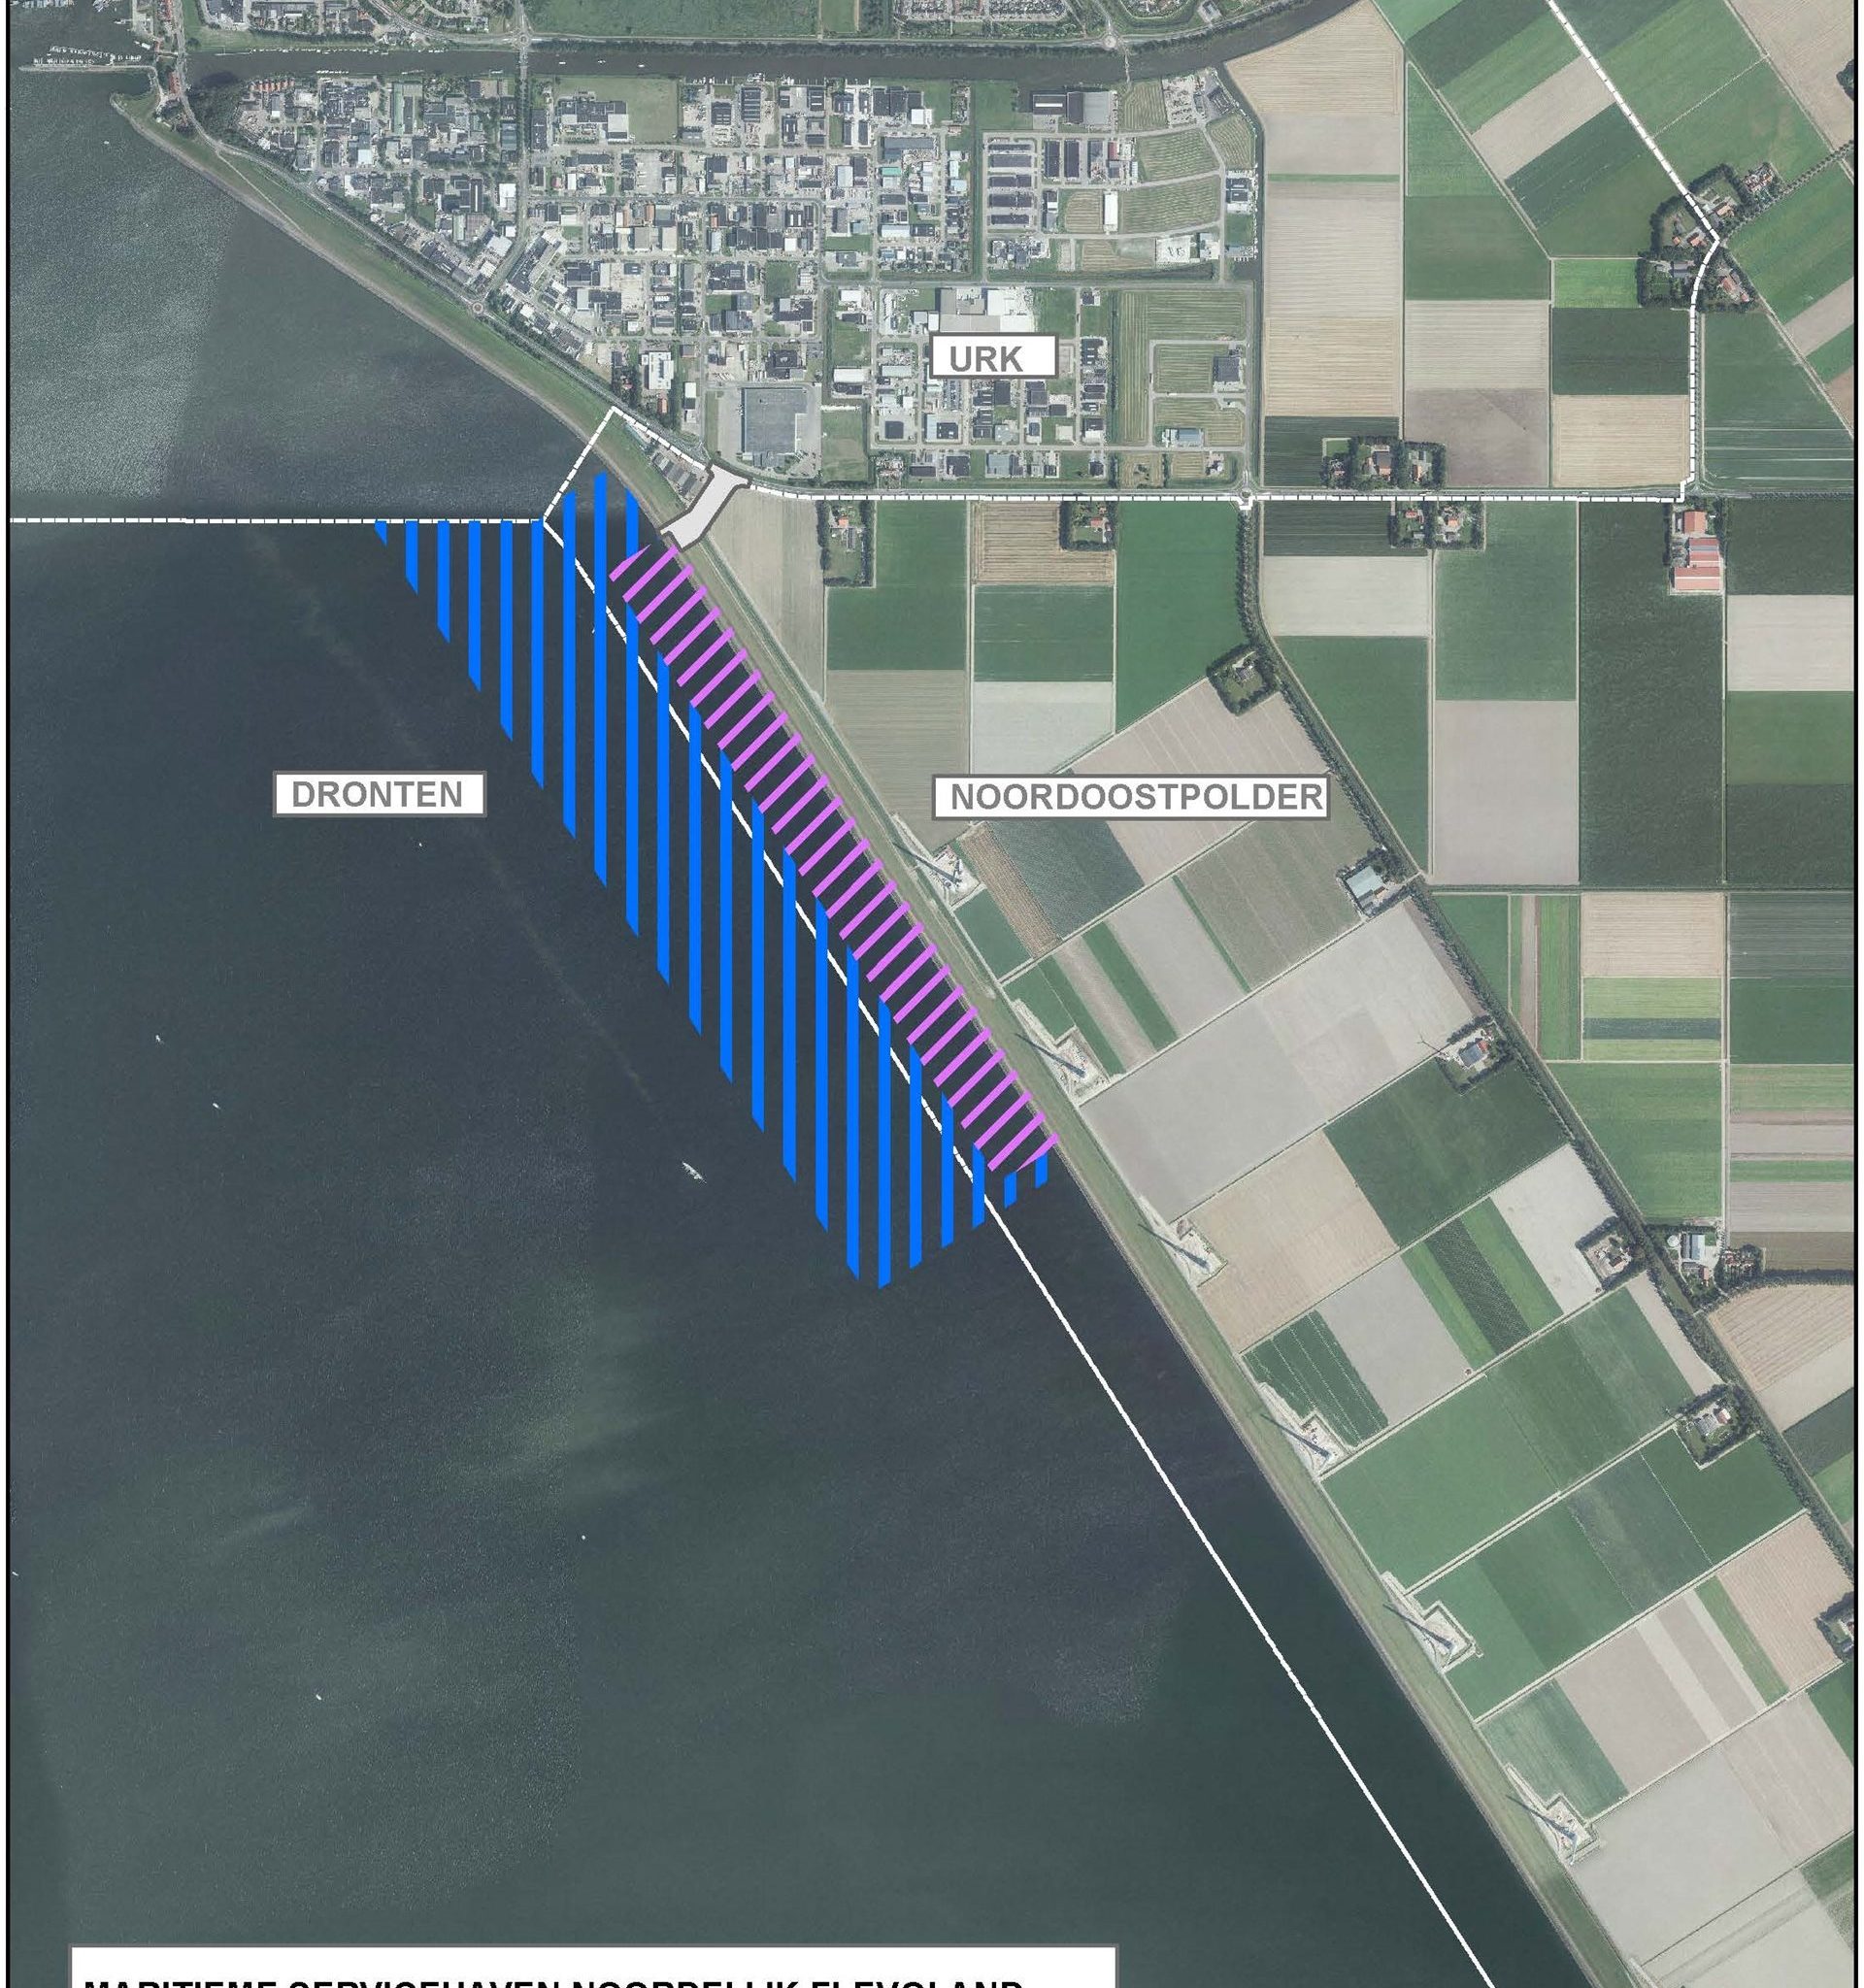 Al met al zal de Maritieme Servicehaven in de plannen van Provincie Flevoland een omvang hebben van 10 hectare. (Foto Flevoland)